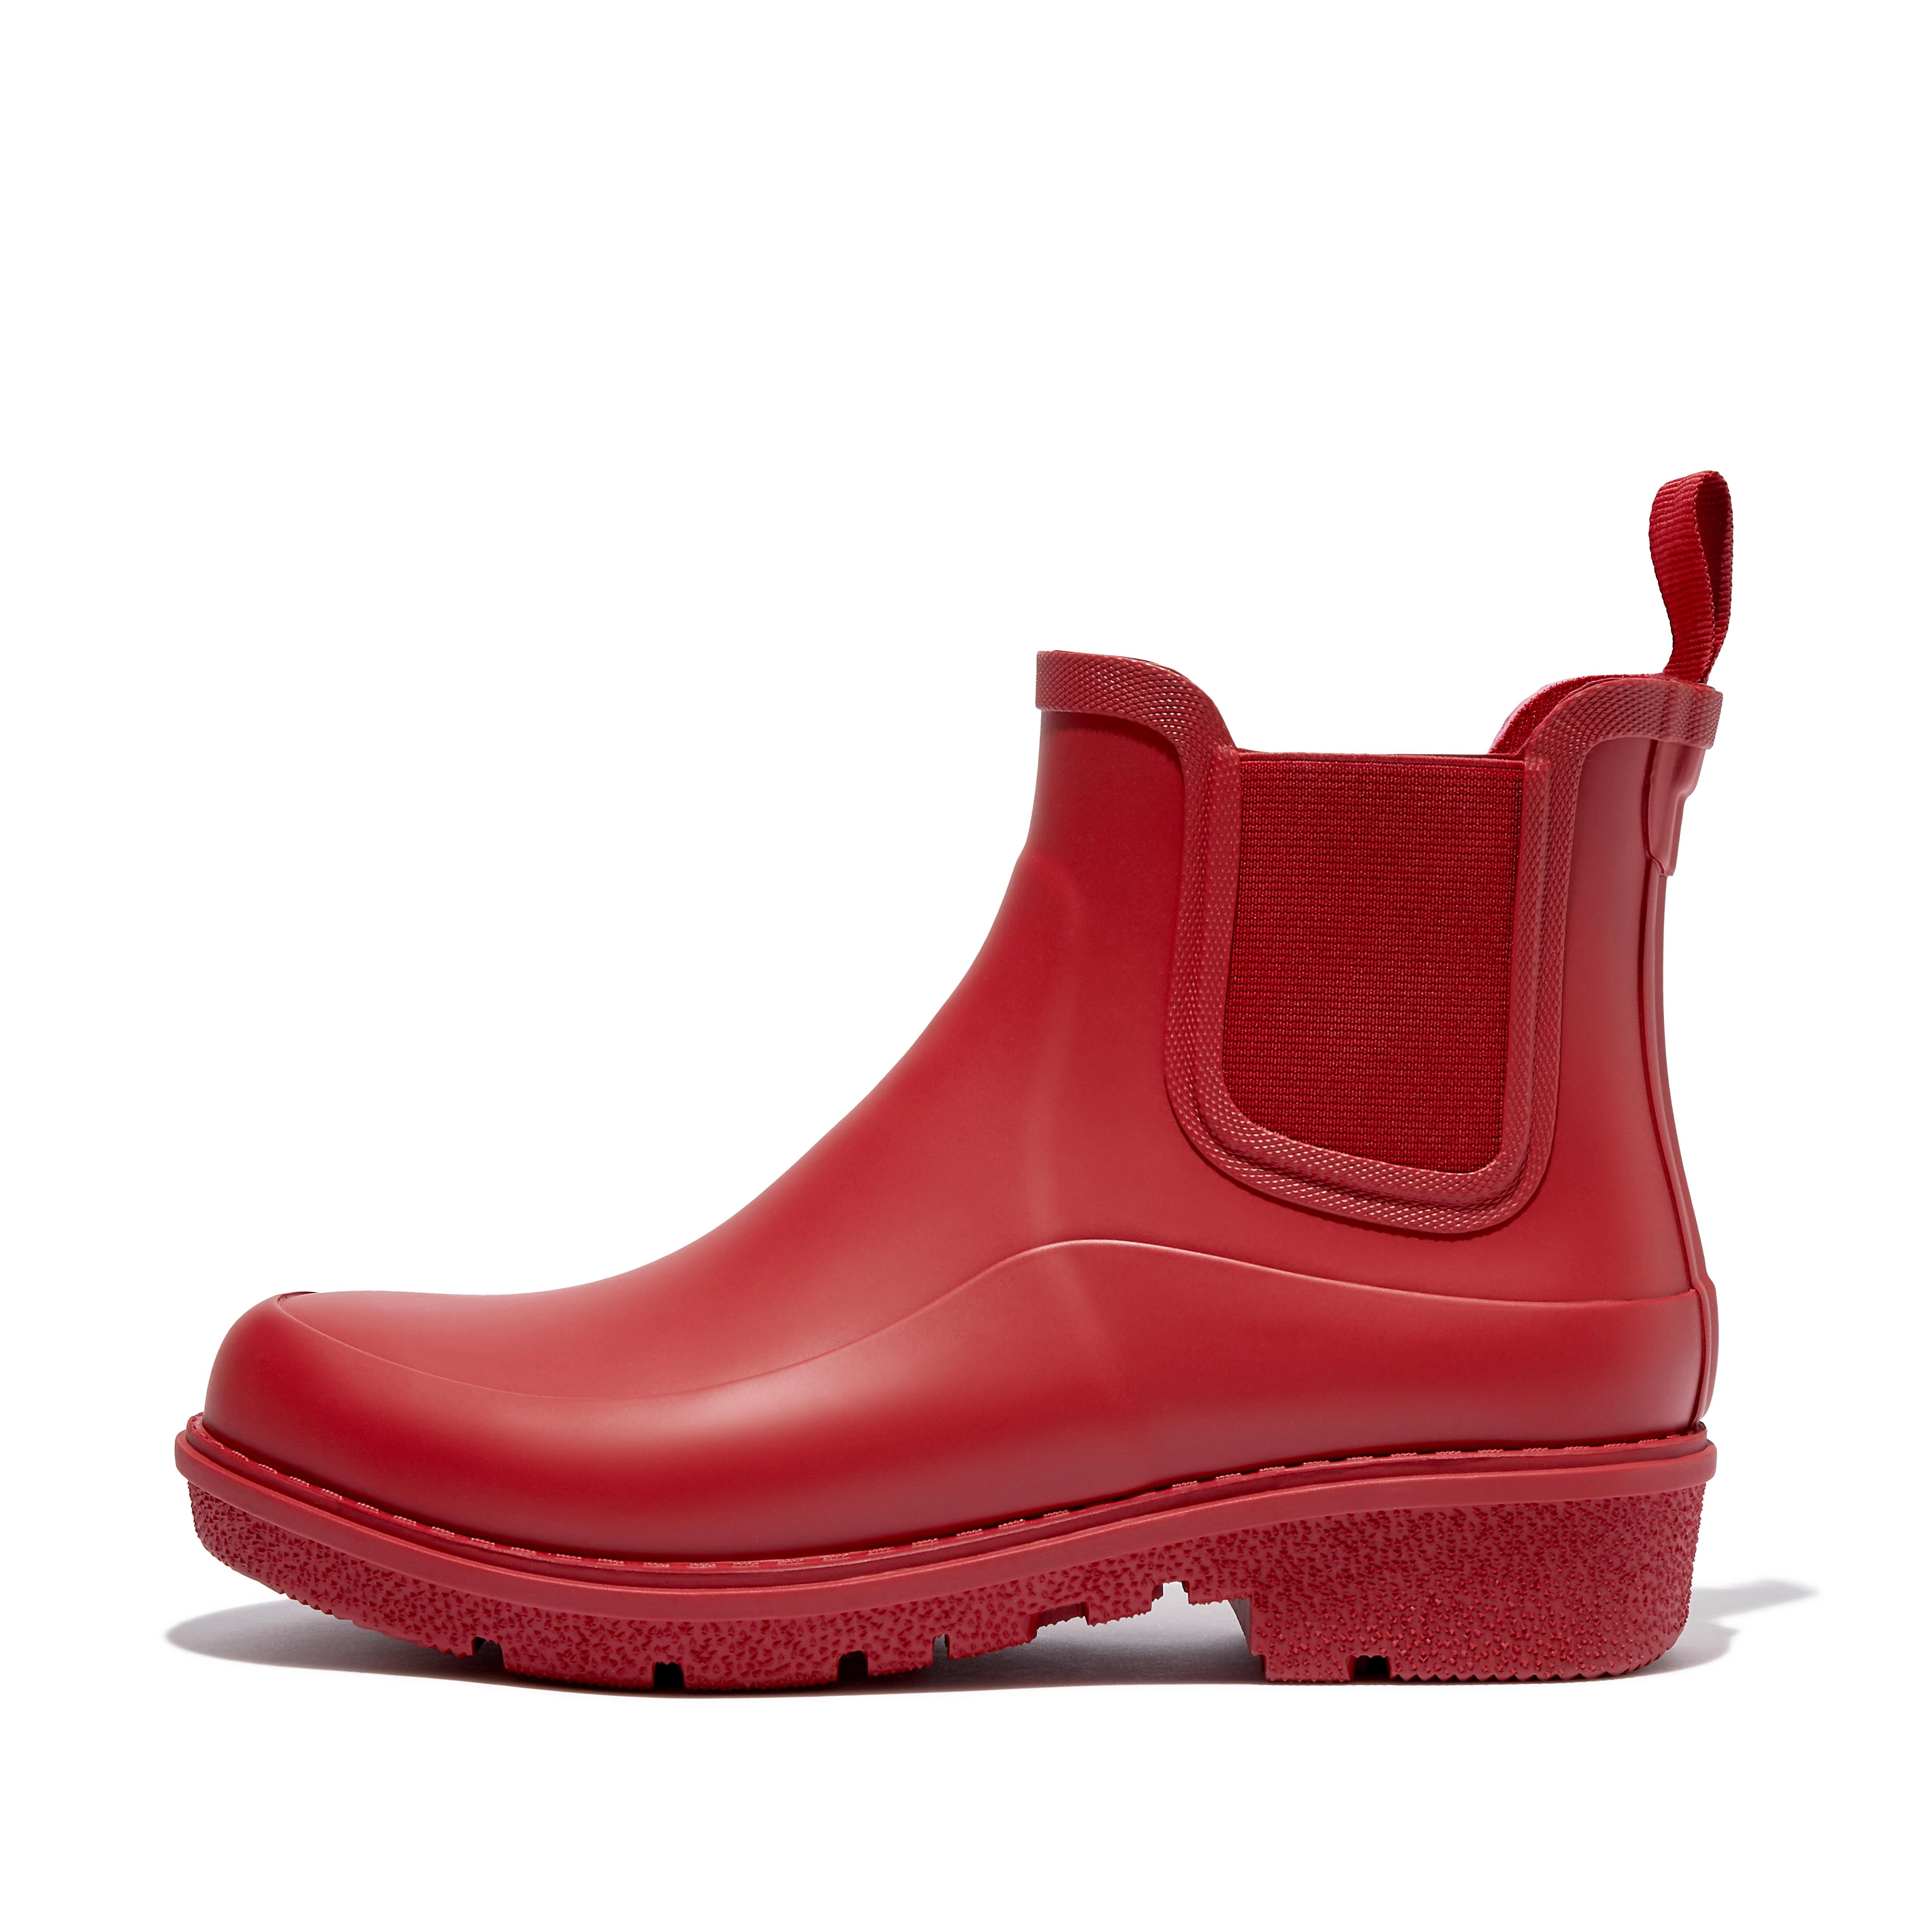 핏플랍 장화 (숏 레인부츠) Fitflop Chelsea Rain Boots,Rich Red